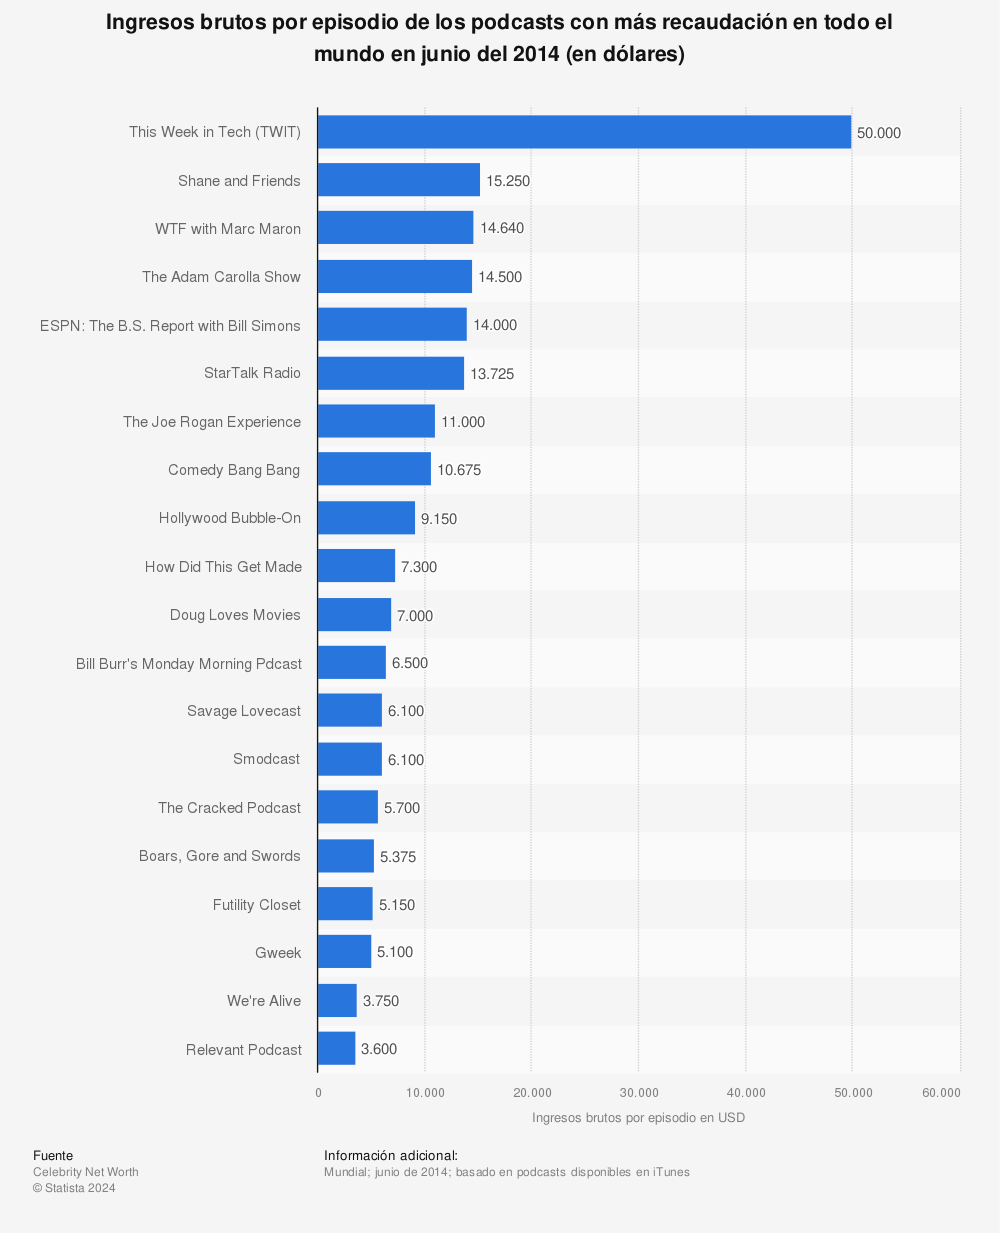 Estadística: Ingresos brutos por episodio de los podcasts con más recaudación en todo el mundo en junio del 2014 (en dólares) | Statista